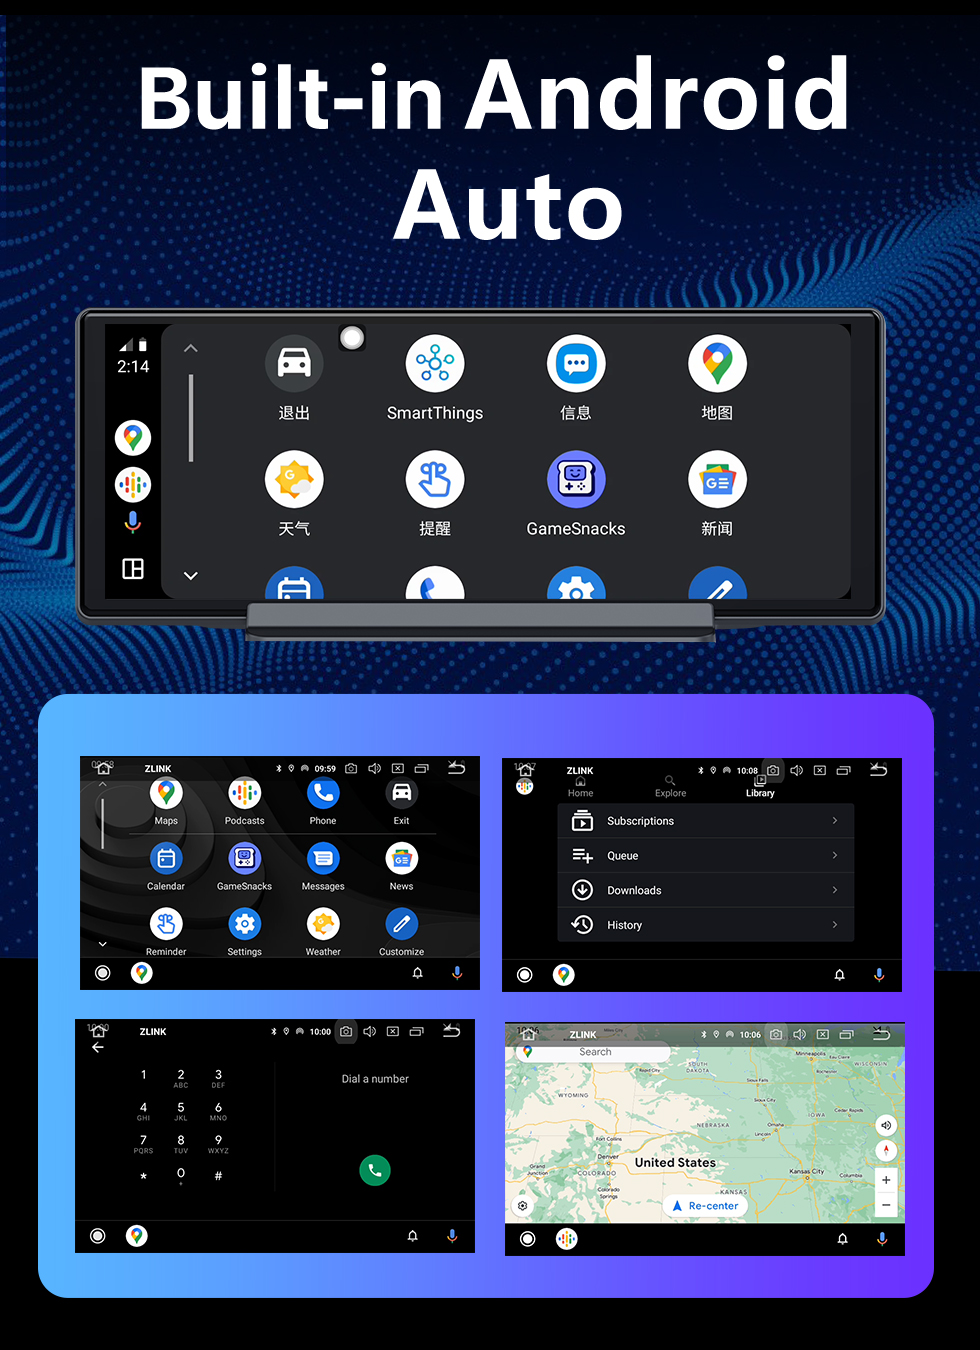 Seicane 10,26 Zoll Android 12.0 Carplay Smart Screen GPS-Navigationssystem mit Bluetooth-TouchScreen-Unterstützung Rückfahrkamera